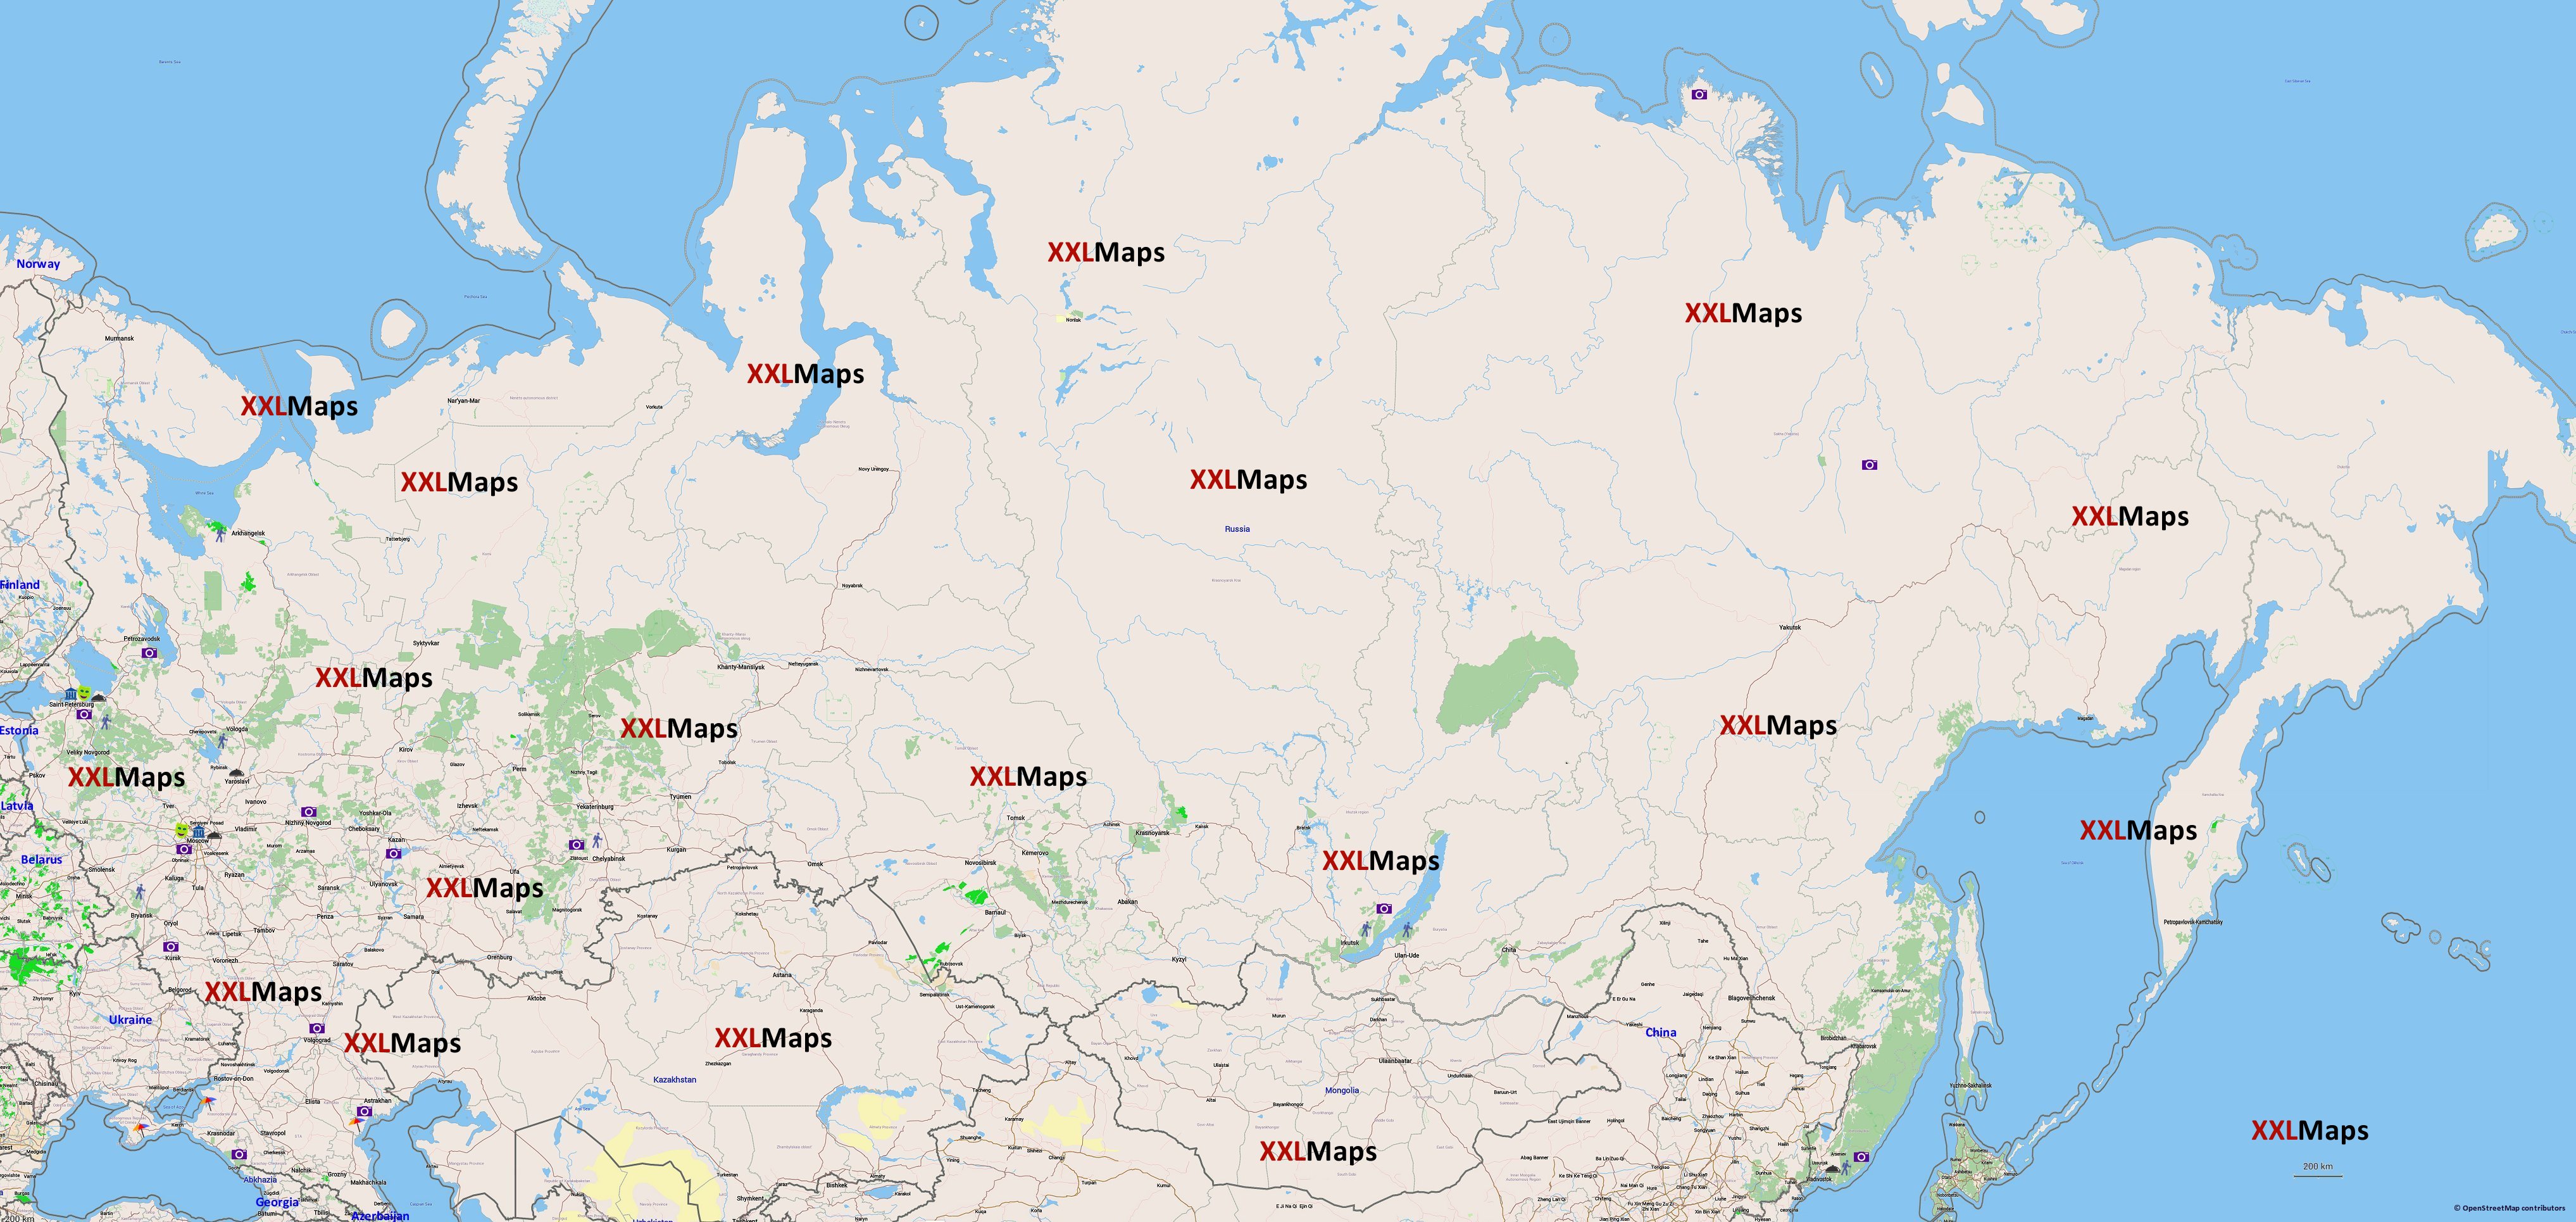 Toeristische kaart van Rusland